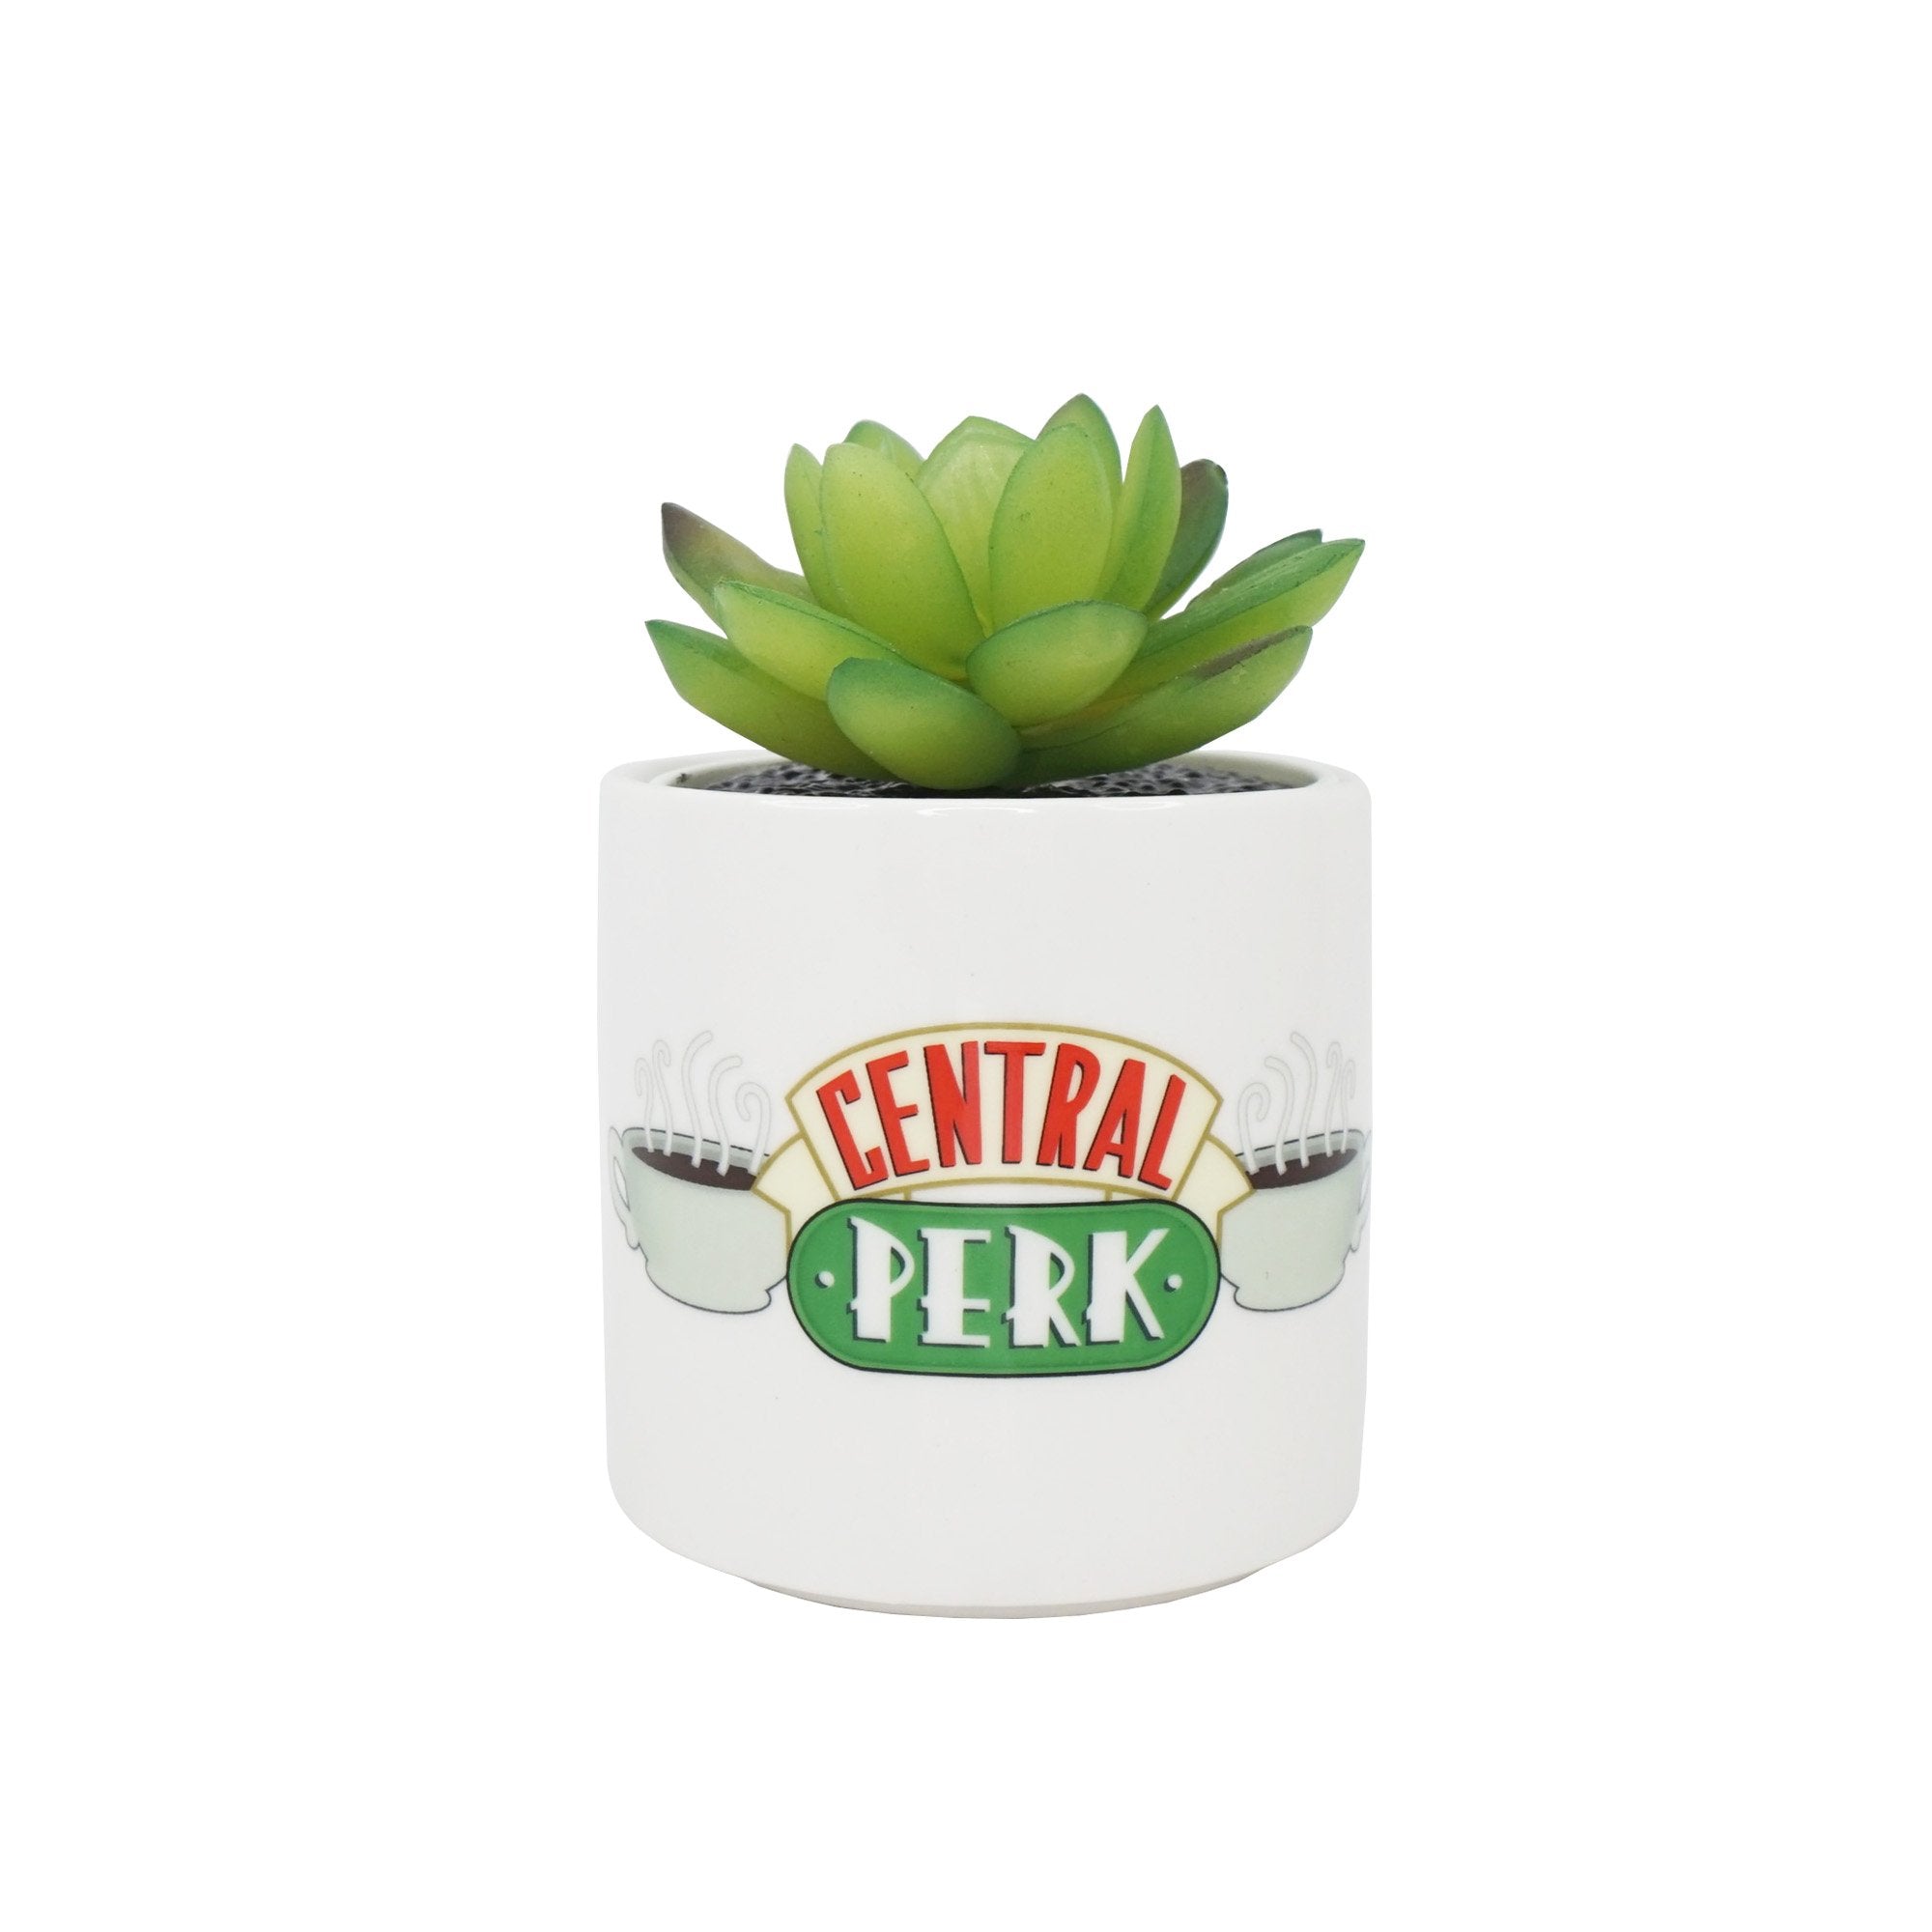 Plant Pot Faux Boxed (6.5cm) - Friends (Central Perk)